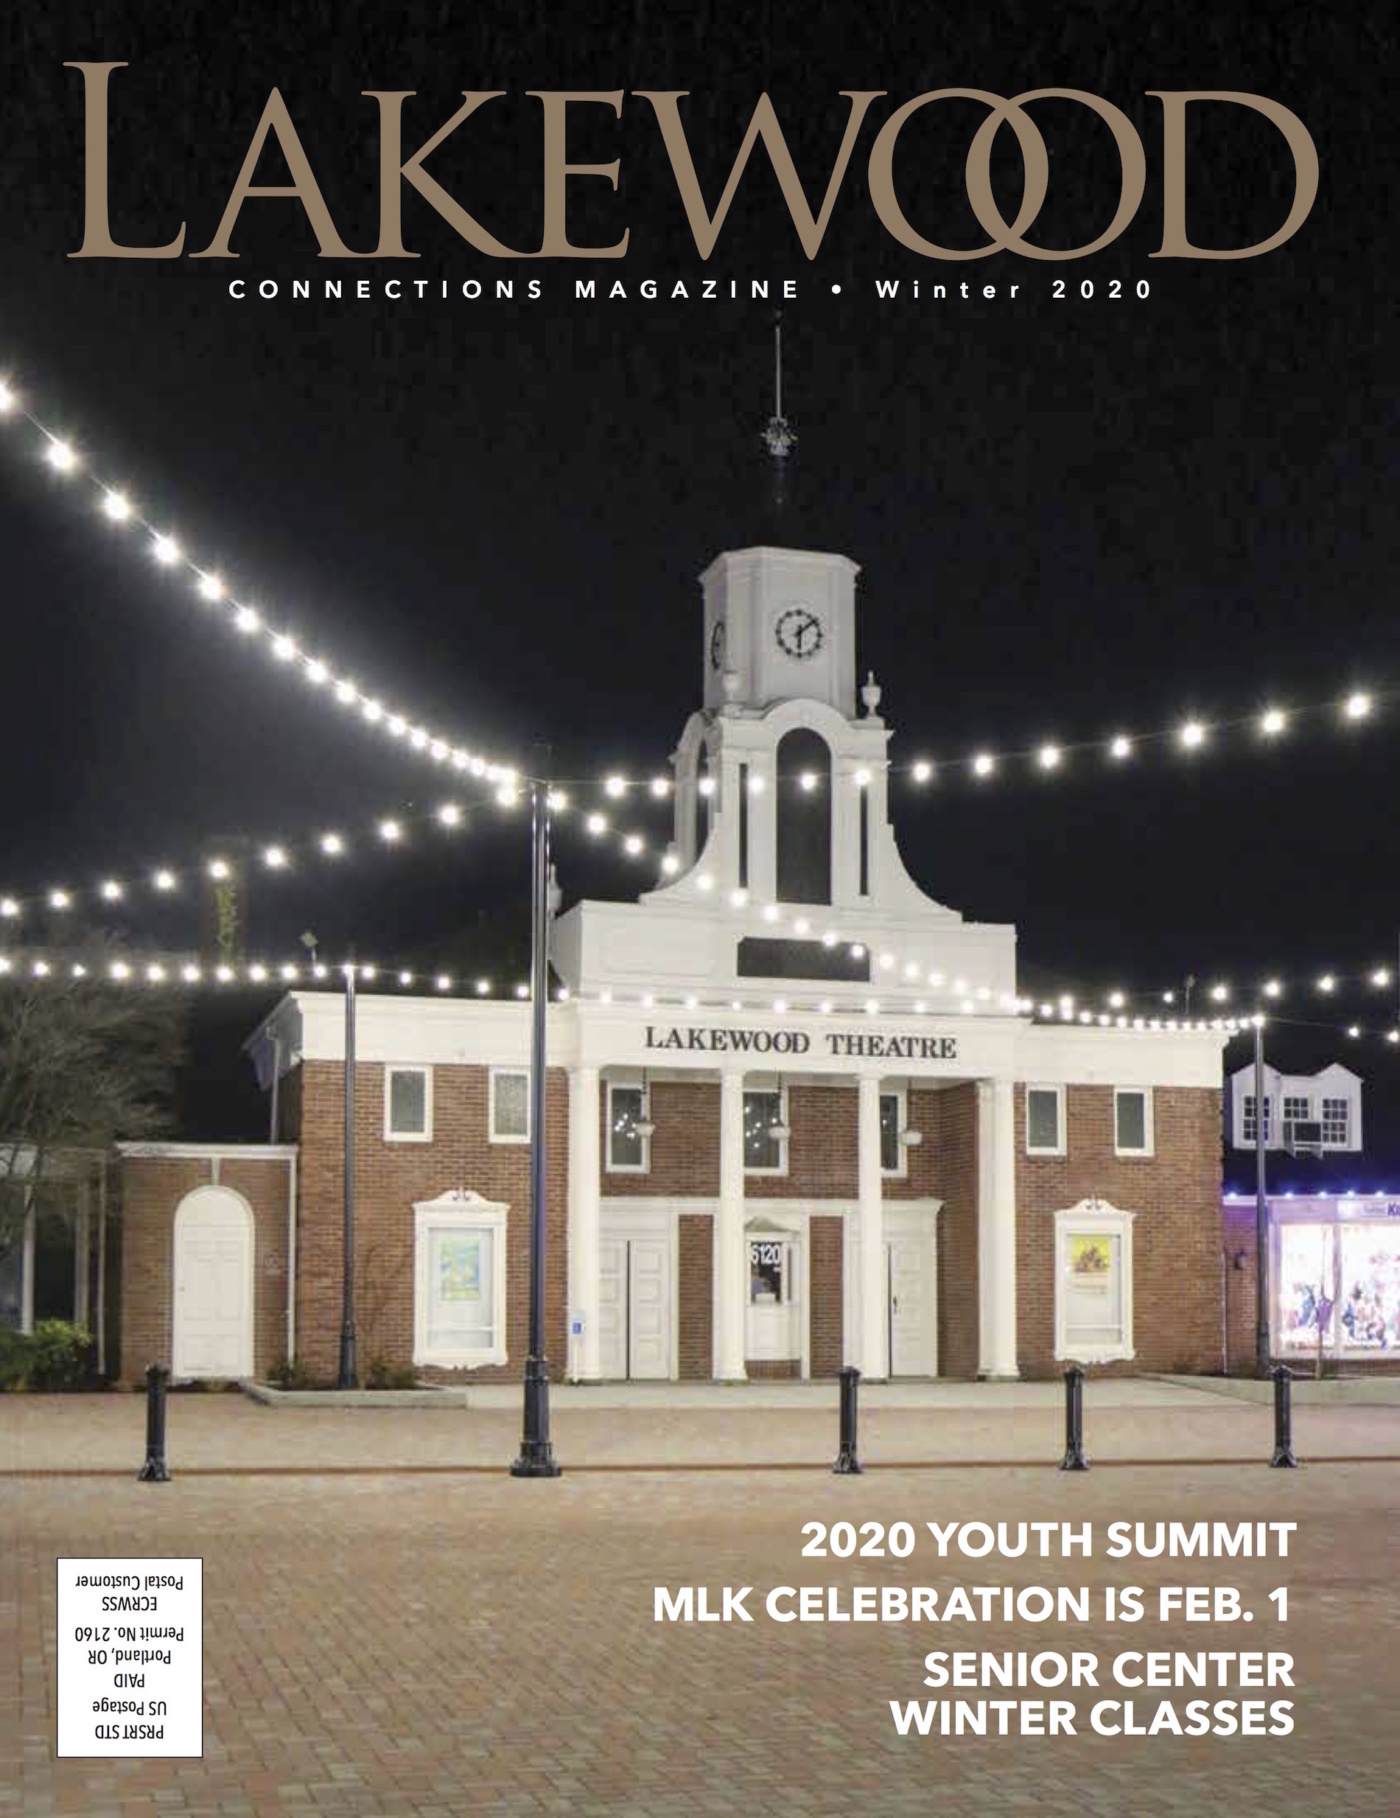 Ảnh bìa của Tạp chí Lakewood Connections cho mùa đông 2020